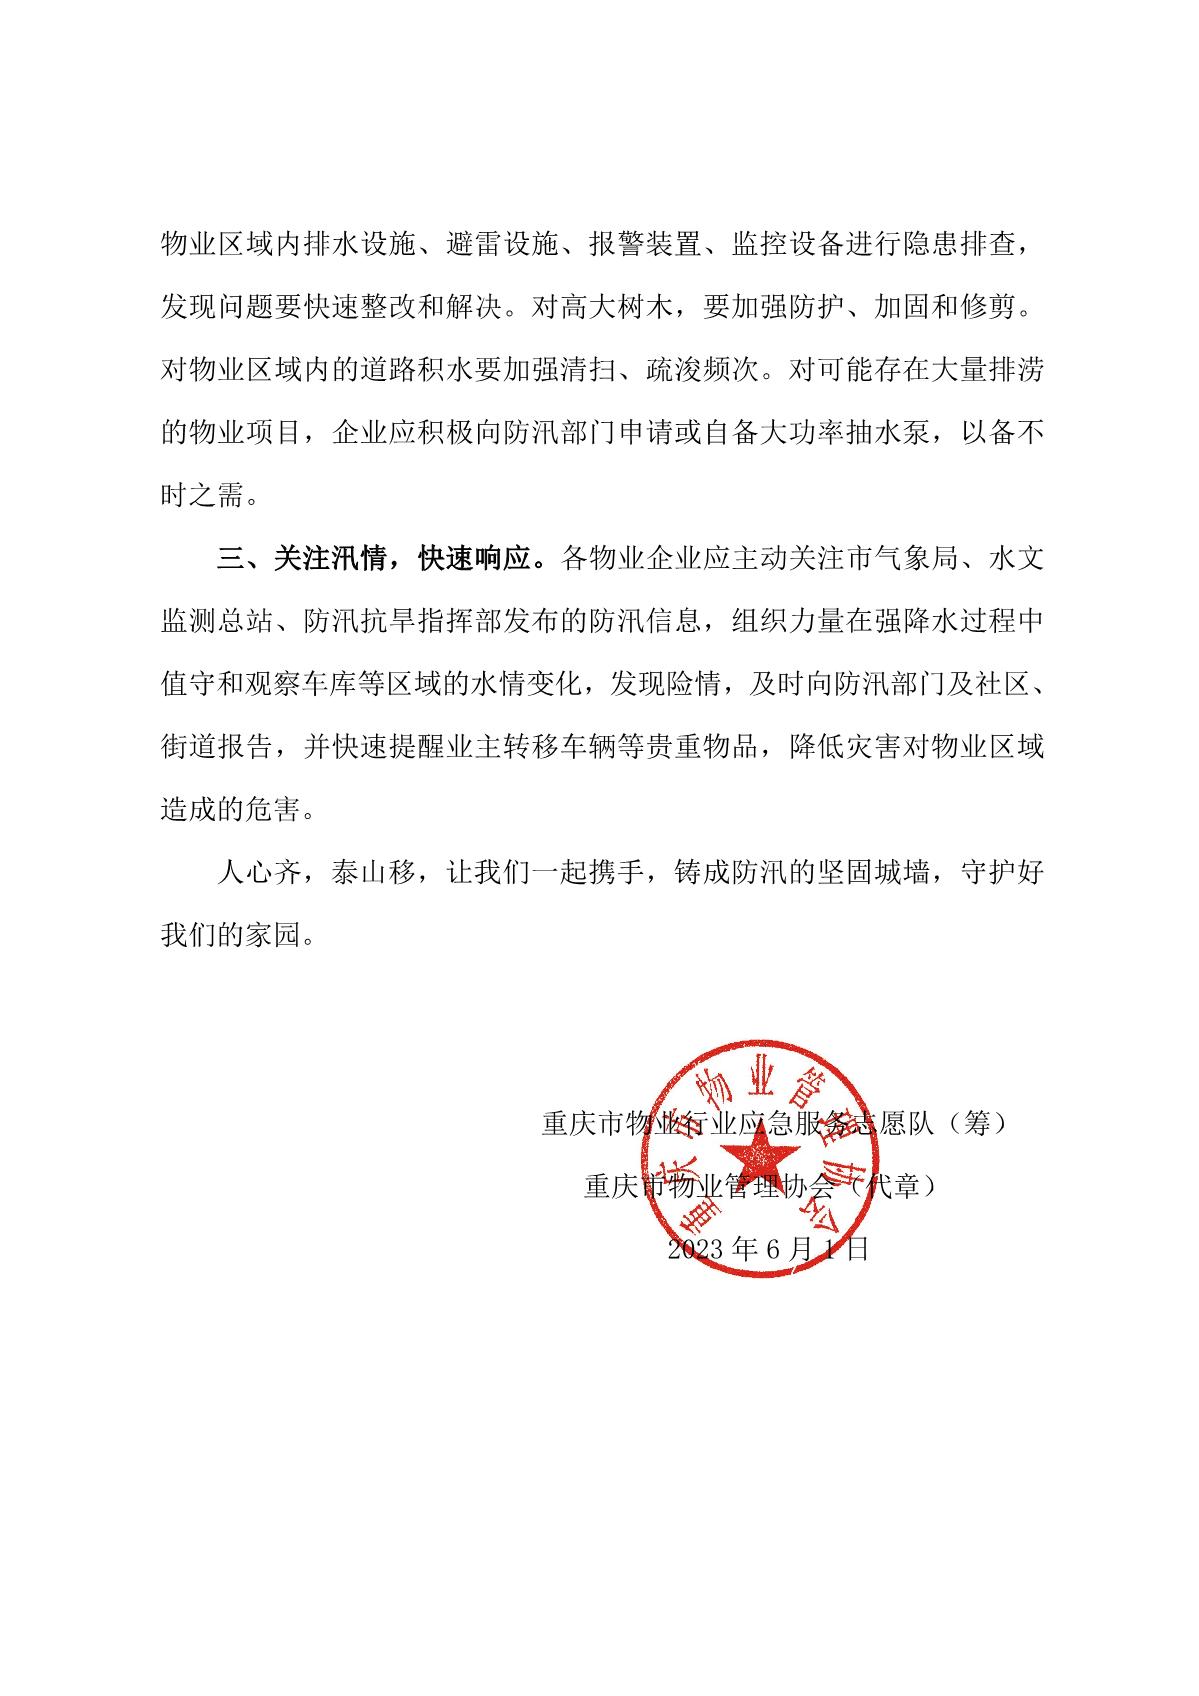 重庆市物业行业应急服务志愿队关于做好物业区域防汛工作的倡议书_2.JPG